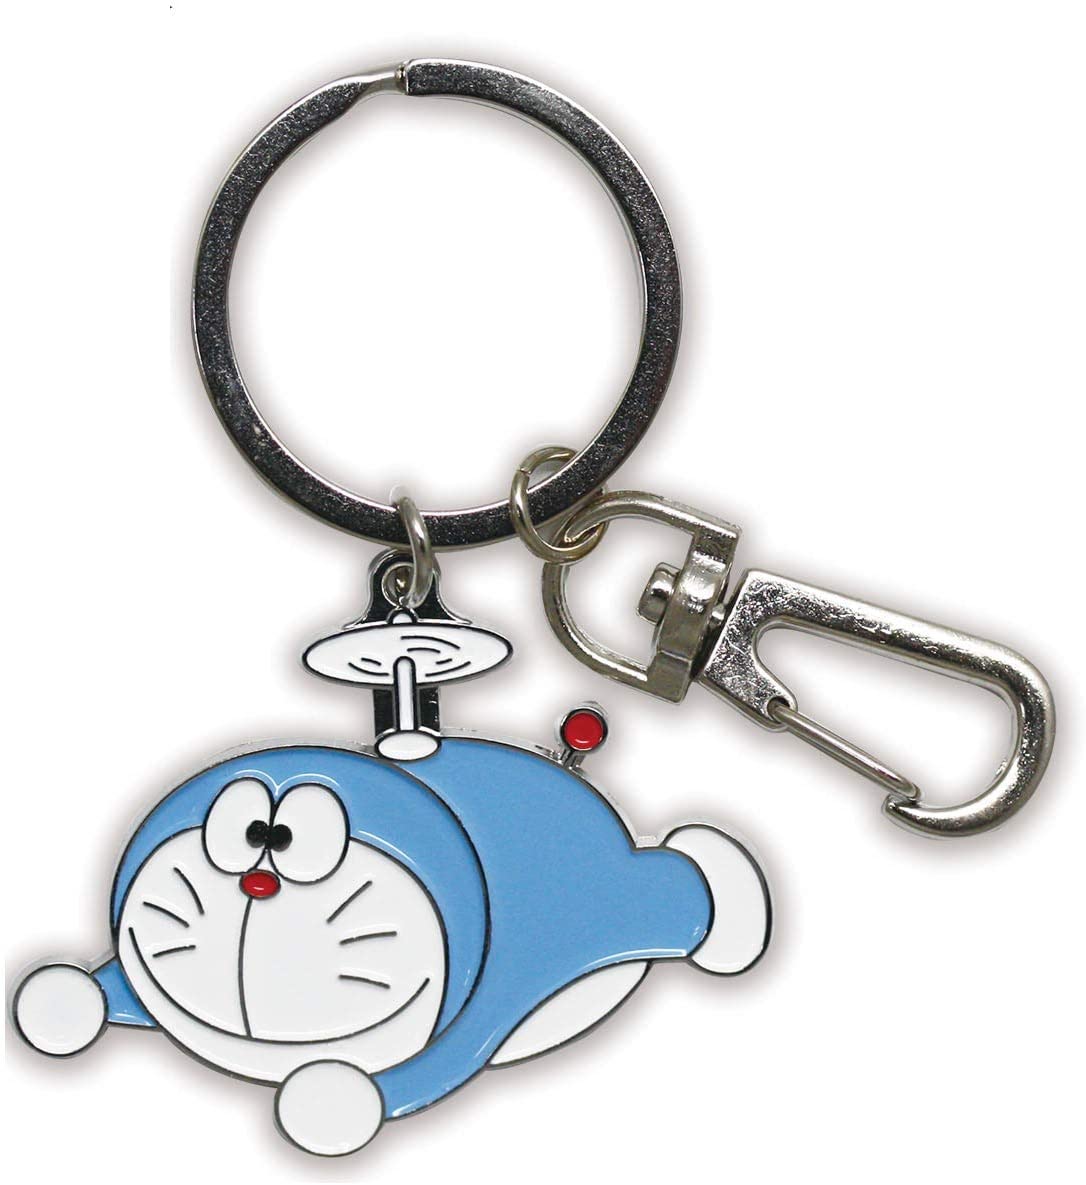 楽天市場 ドラえもん I M Doraemon キーリング 初期ドラえもんタケコプター Id Kr012 在庫あり キーホルダー アニメグッズ かわいい キーリング おしゃれ スマホガラスのフューチャモバイル